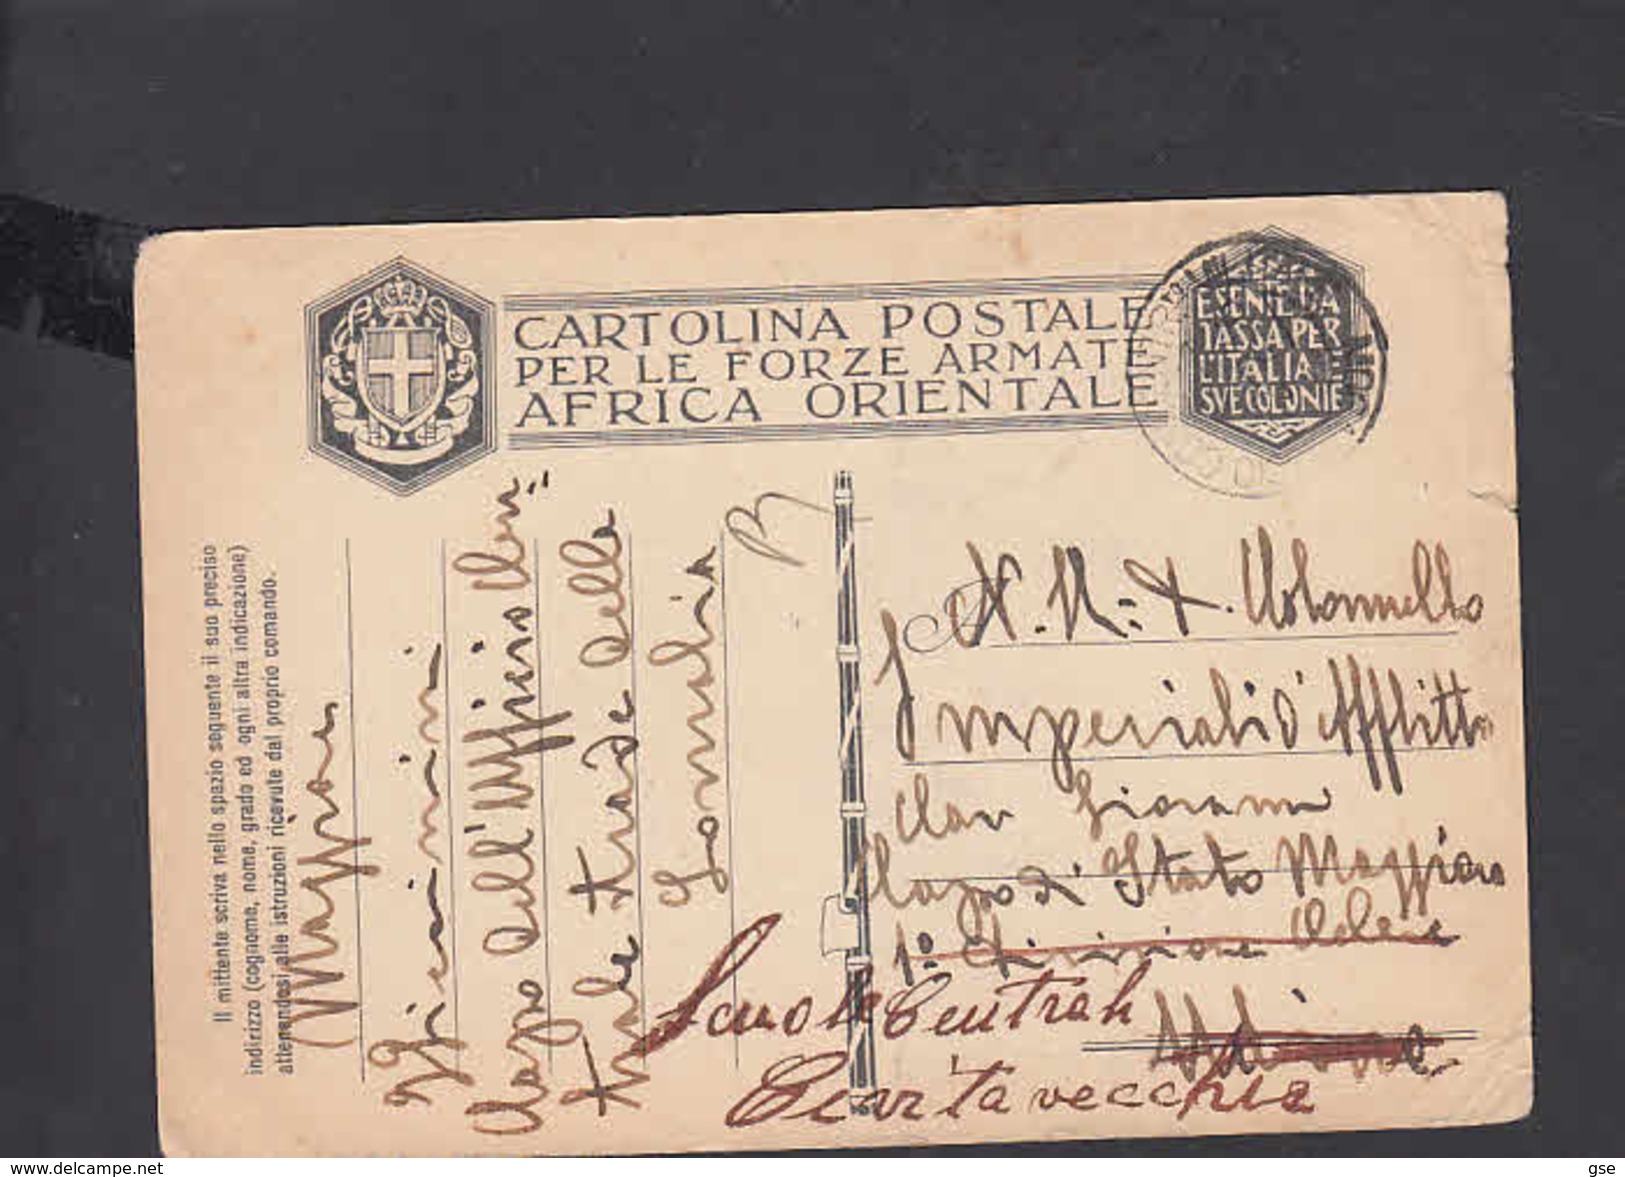 CARTOLINA POSTALE - Forze Armate - A.O.I. - 1936 - Pertile 19 - Africa Oriental Italiana